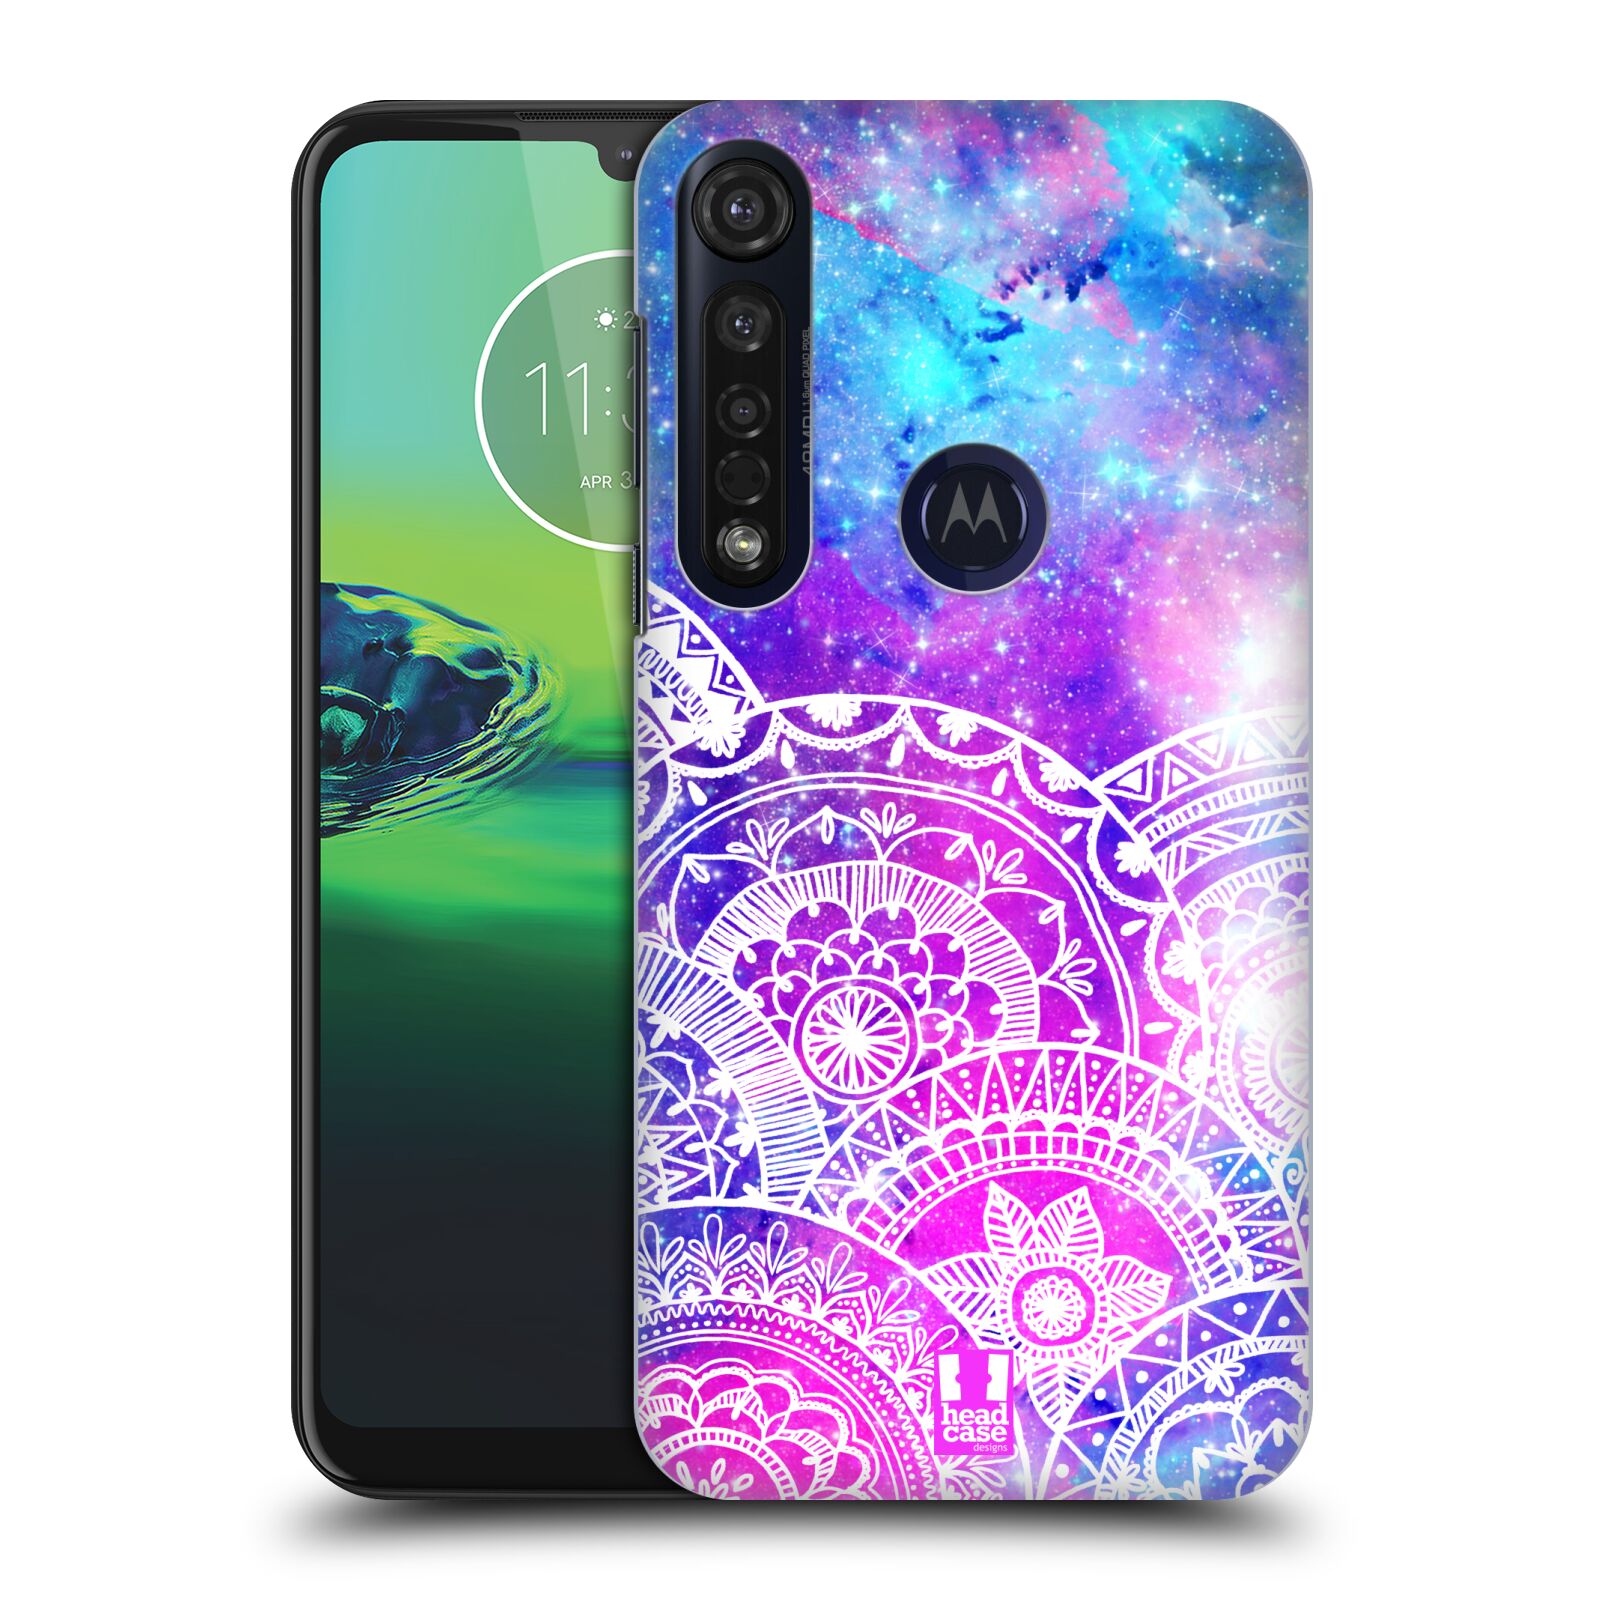 Pouzdro na mobil Motorola Moto G8 PLUS - HEAD CASE - Mandala nekonečná galaxie